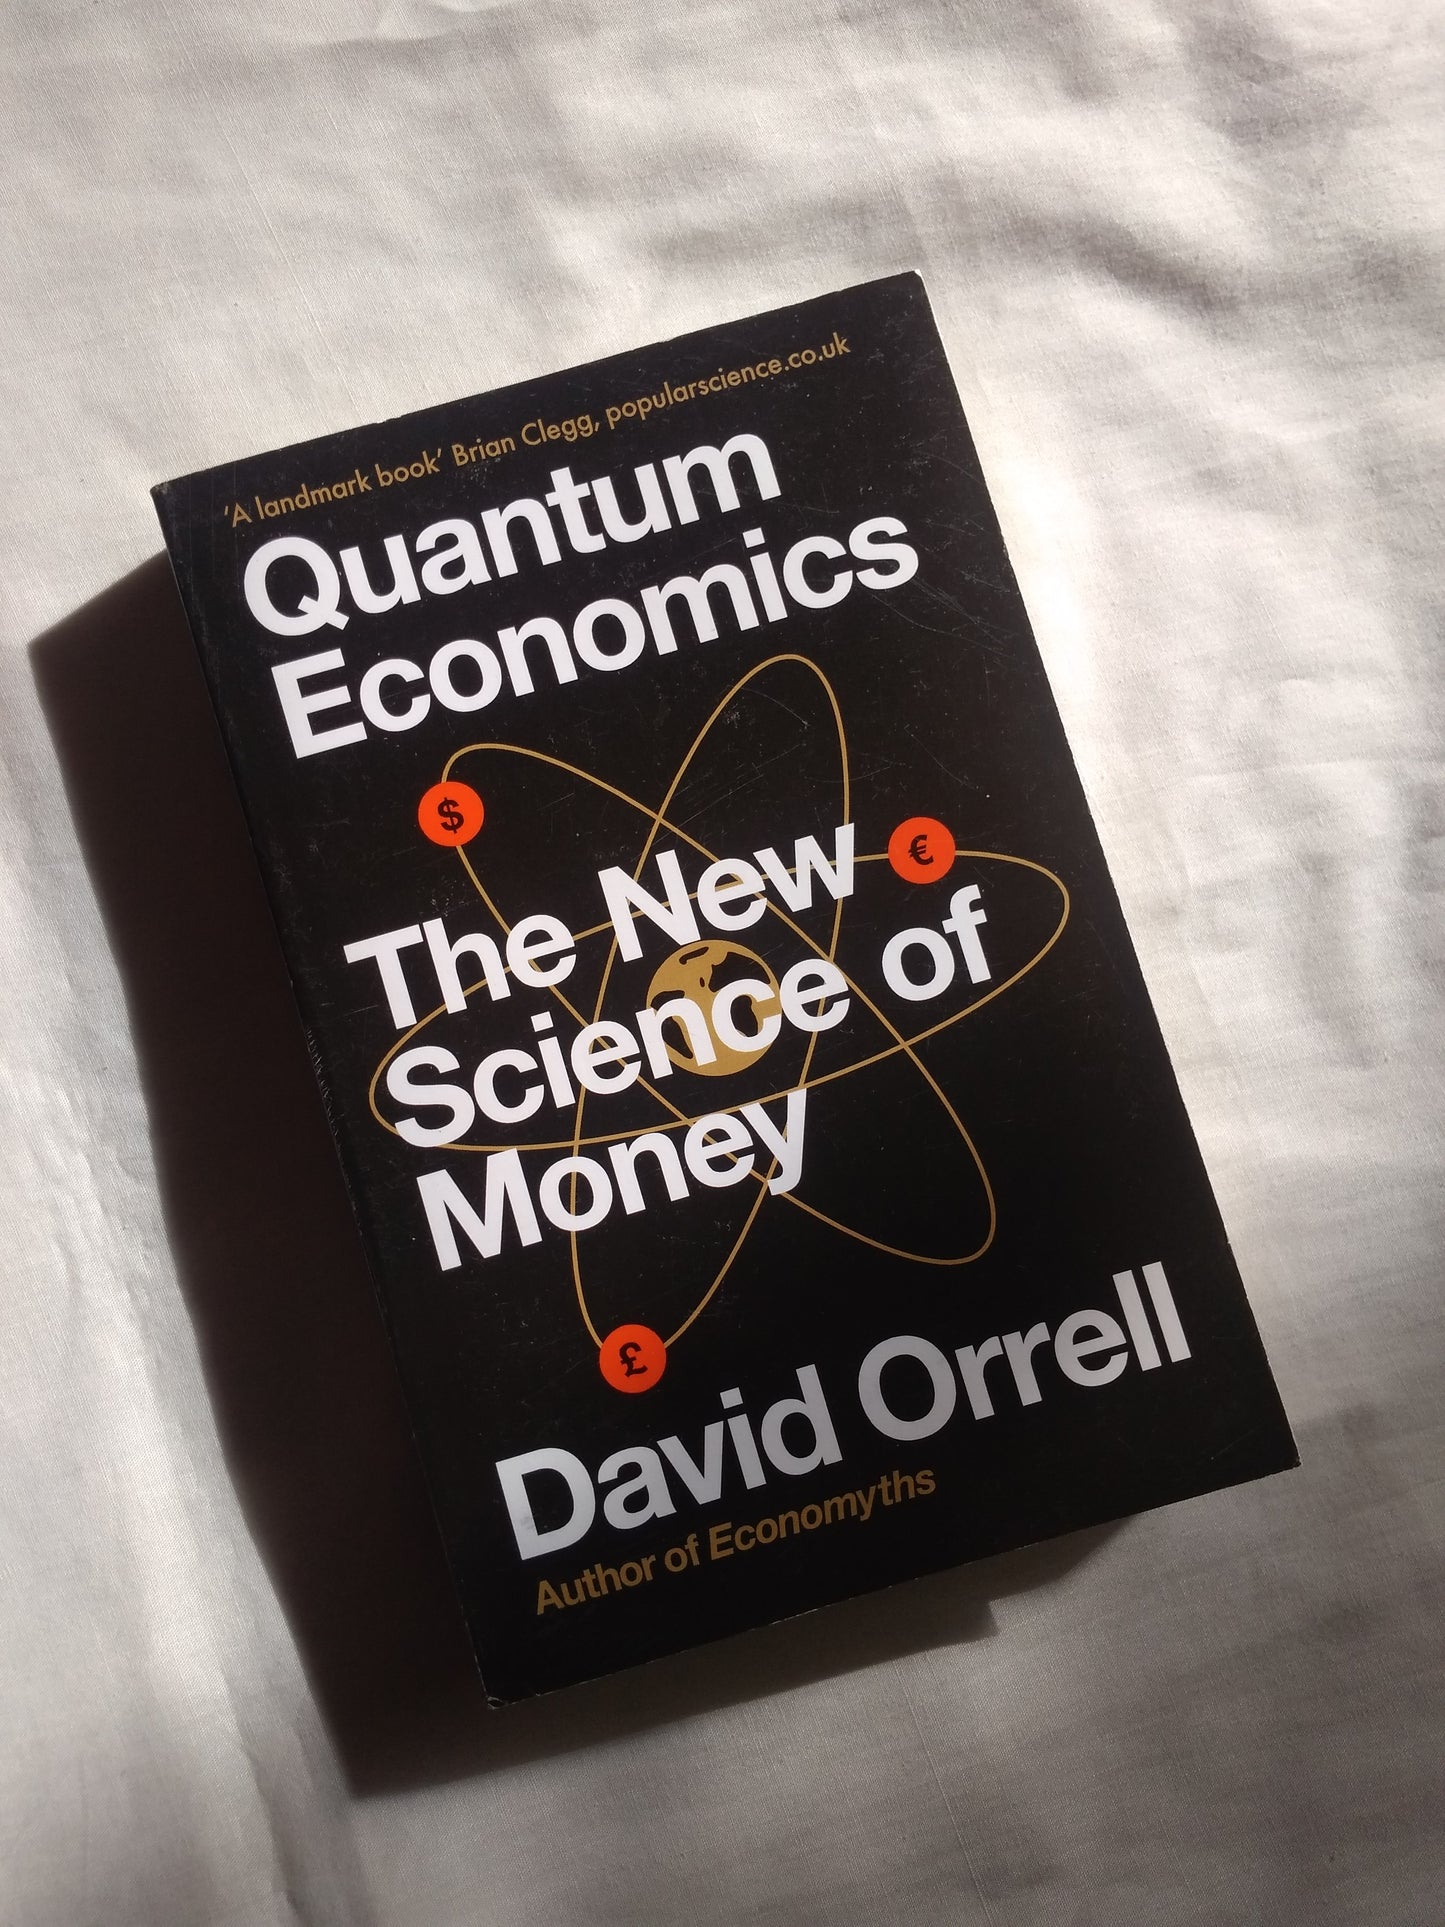 Quantum Economics: The New Science of Money